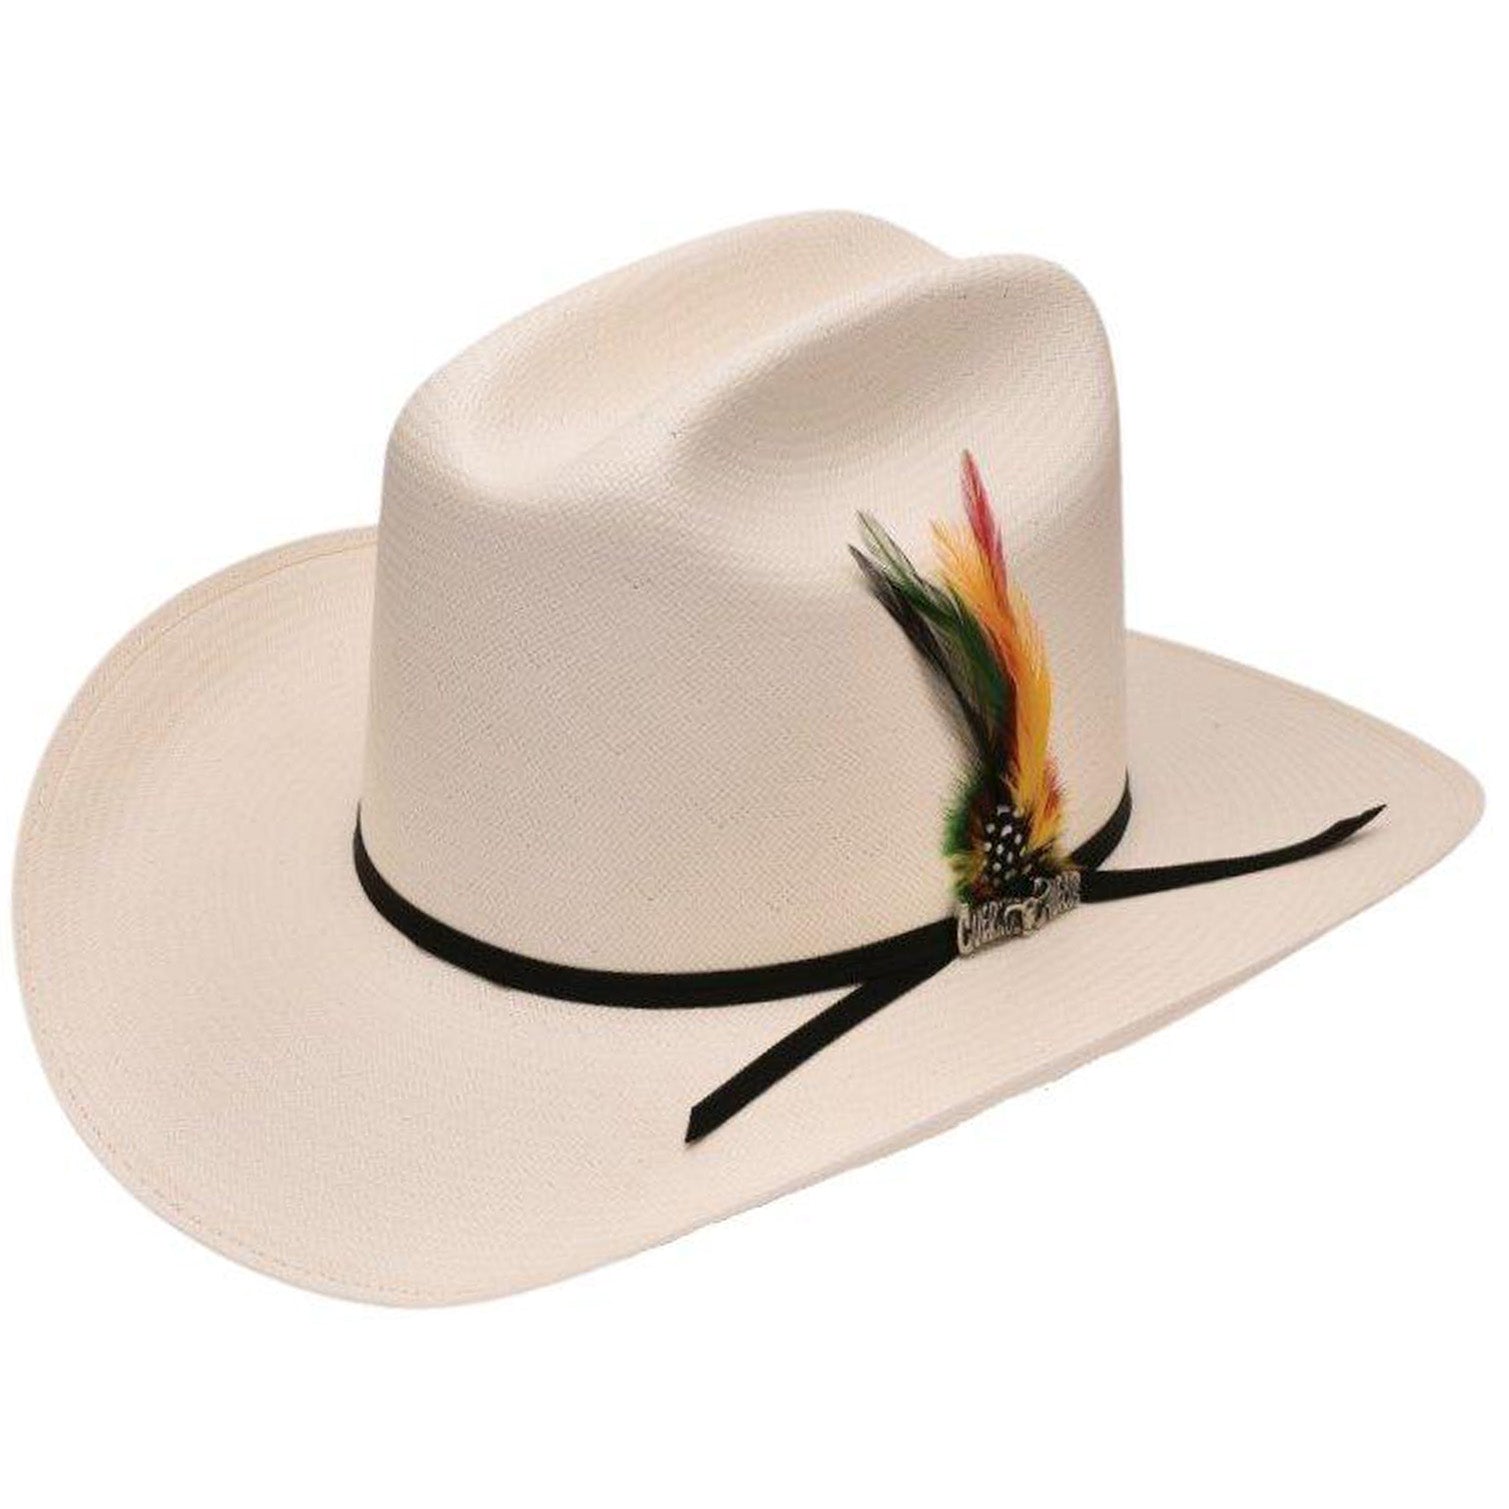 Cuernos Chuecos Hats 100x Durango